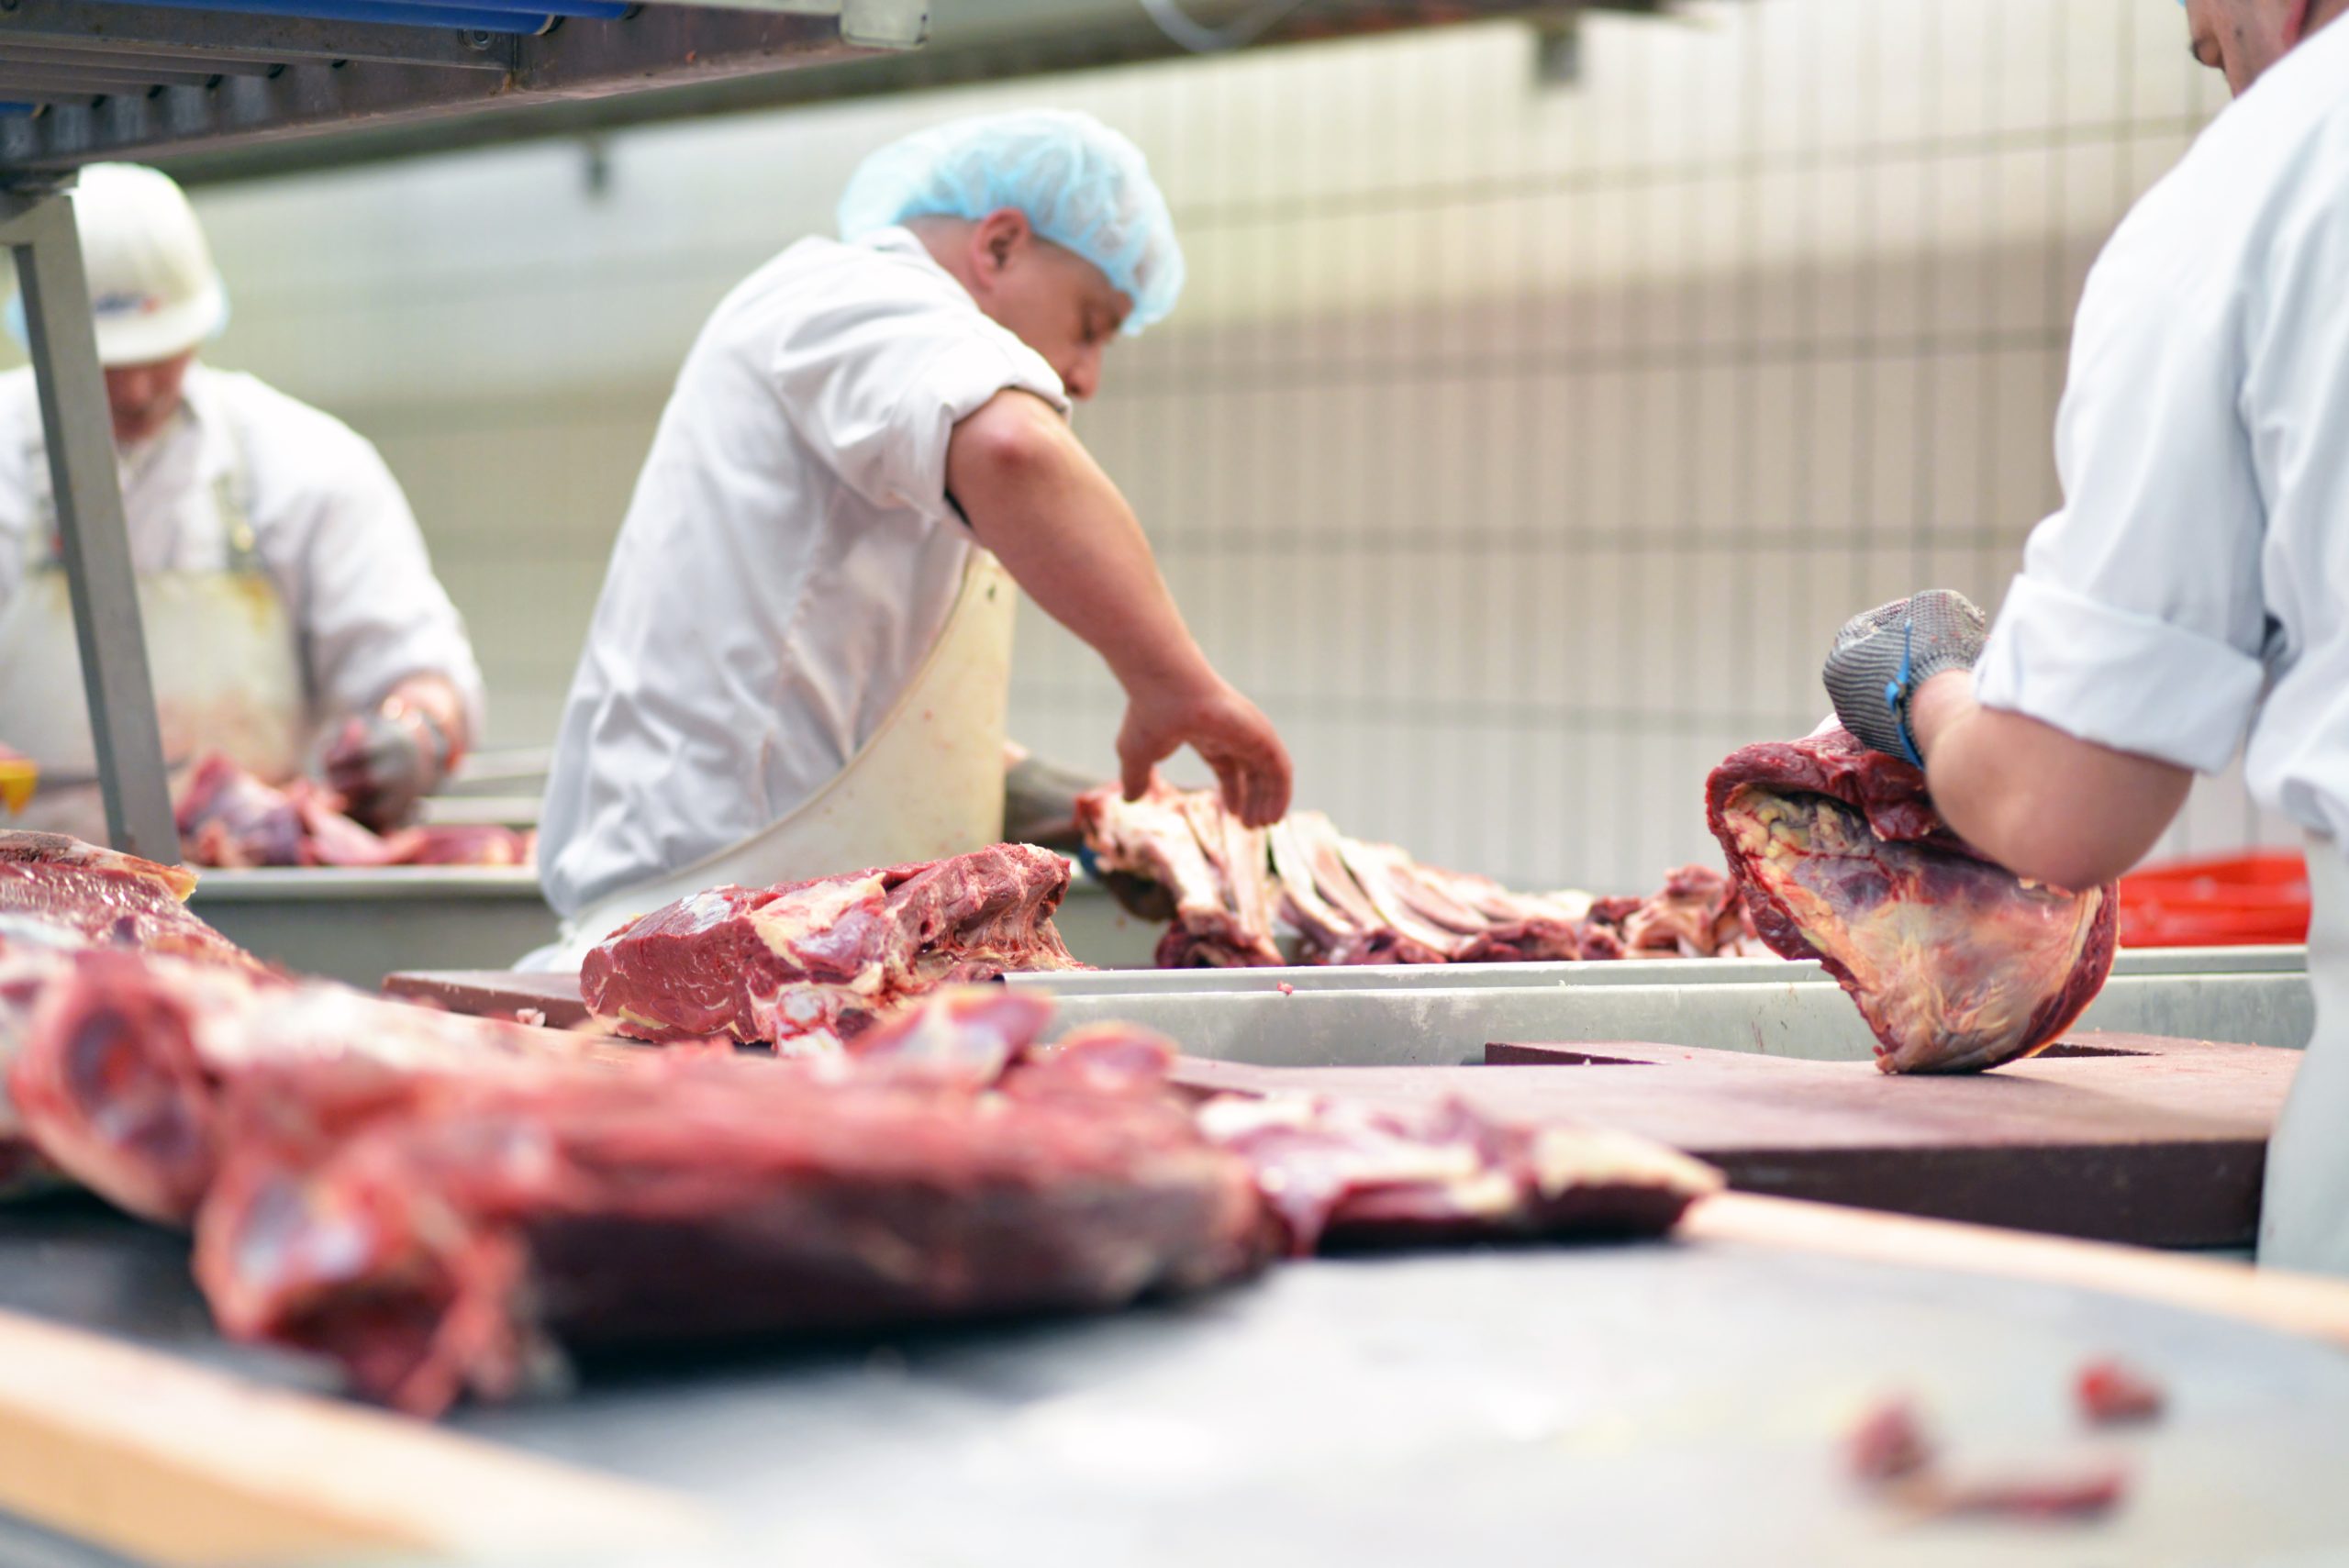 Leiharbeit in der Fleischindustrie verboten - schön und gut, aber Tönnies muss trotzdem enteignet werden!